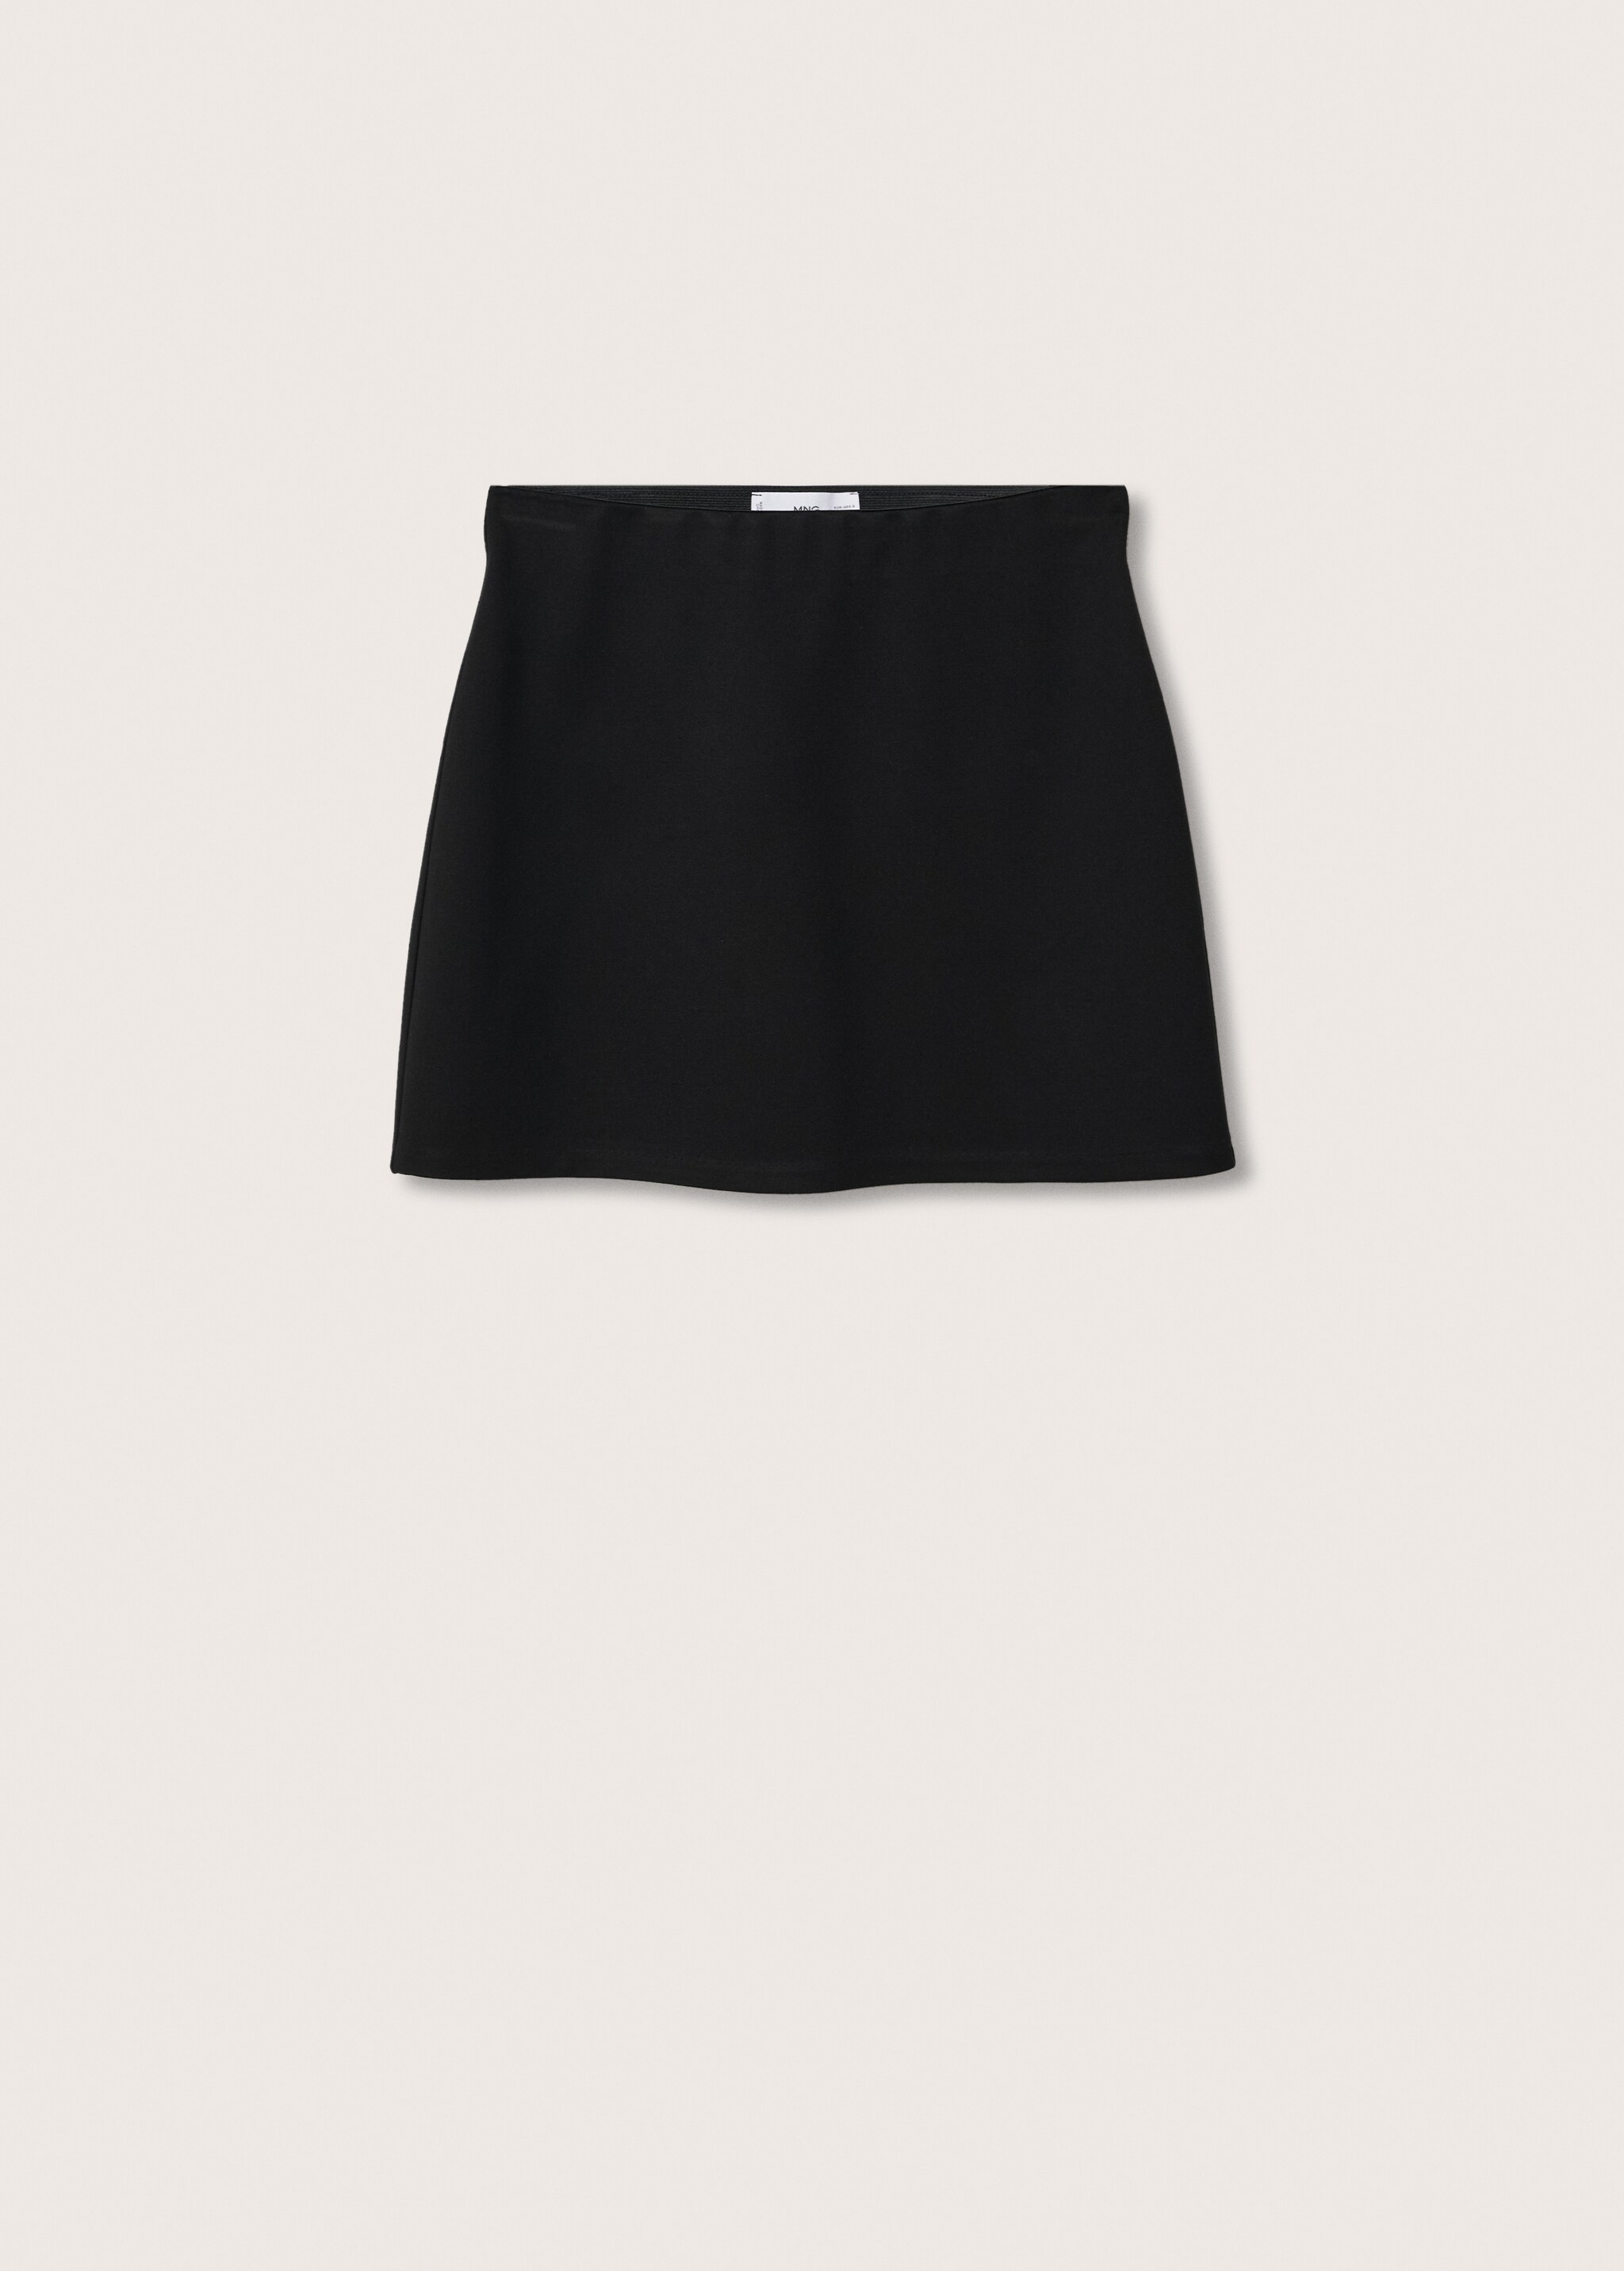 Minifalda cintura elástica - Artículo sin modelo